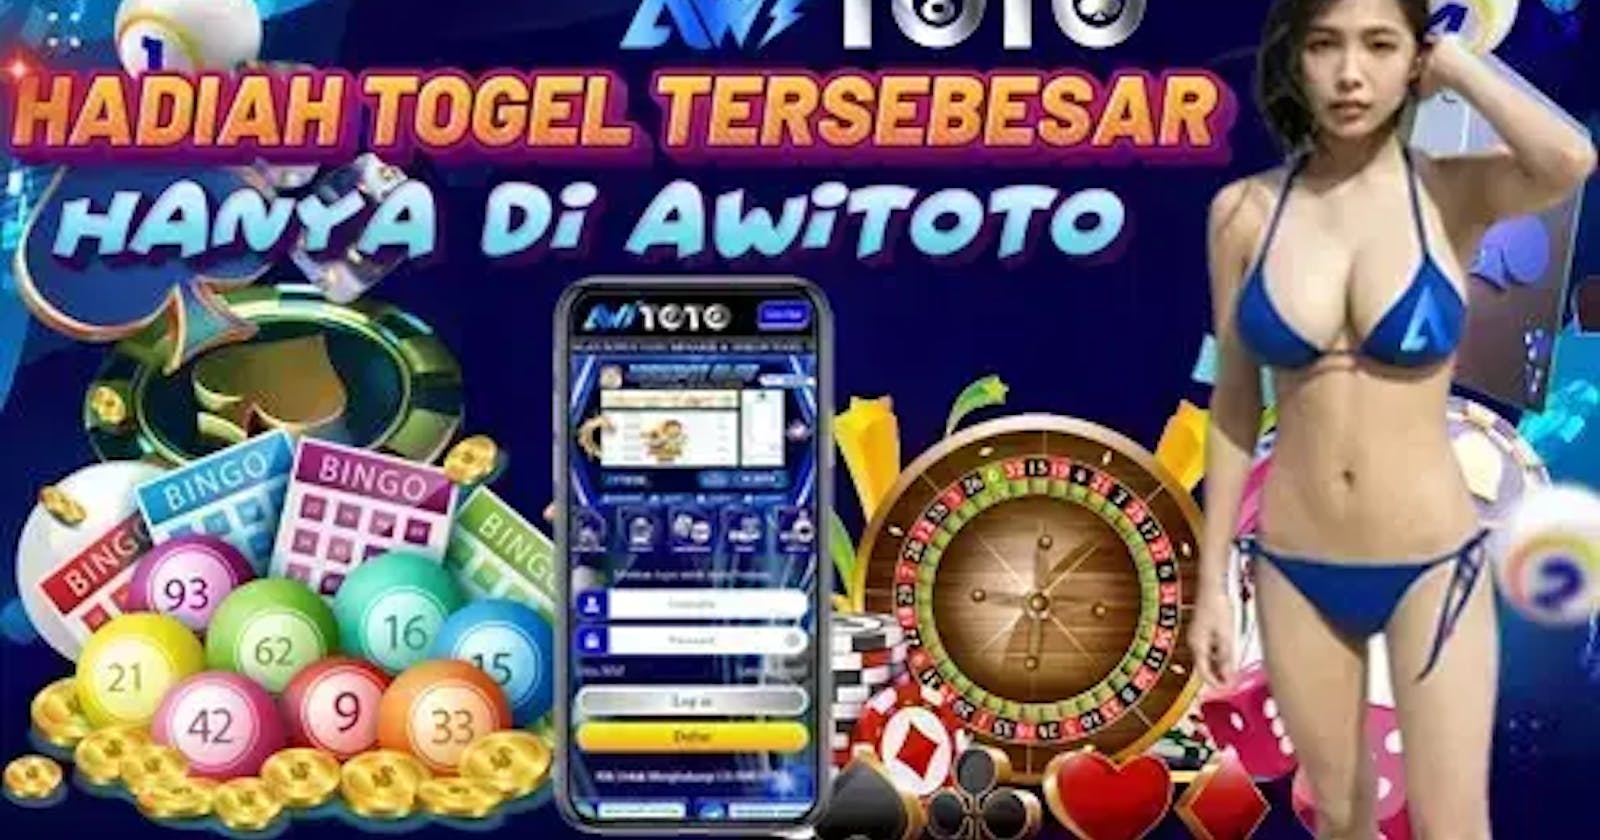 AWITOTO: Keunggulan Bermain Dalam Judi Slot Online Gacor Provider Toptrend Gaming Terbaru